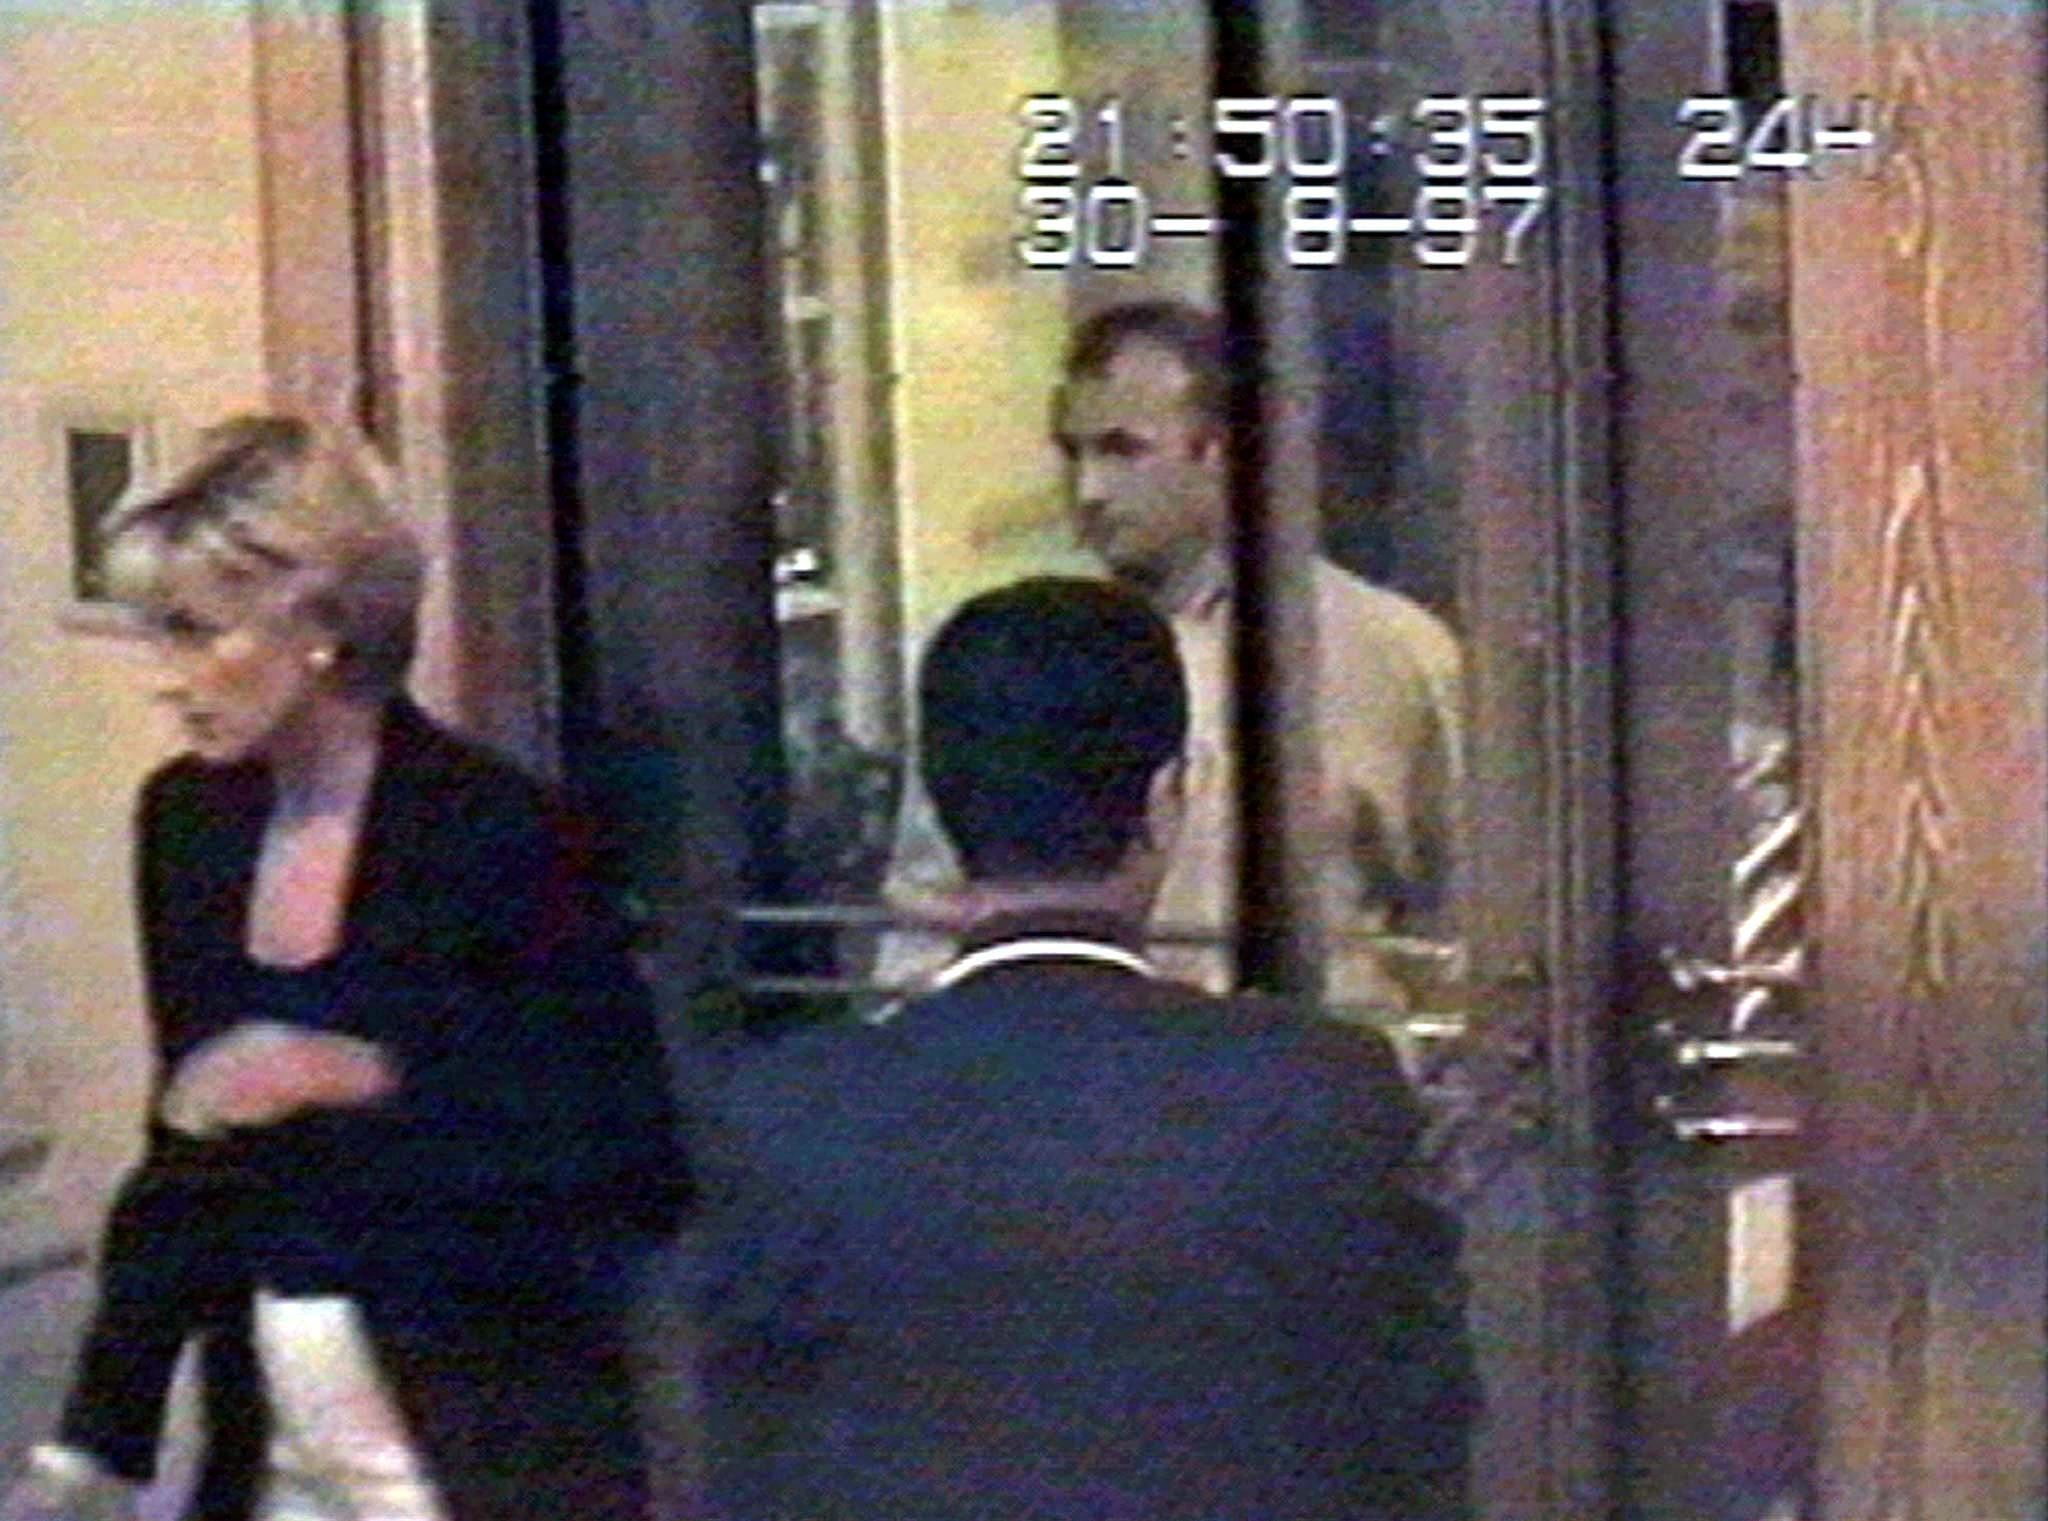 FOTO DE ARCHIVO: Diana, Princesa de Gales, ingresa al Hotel Ritz antes de una cena con Dodi Al Fayed en París, Francia, el 30 de agosto de 1997, en esta imagen fija de un video de seguridad publicado el 5 de septiembre de 1997 por el propietario de Harrods, Mohammed al. Fayed  ( Via REUTERS/File Photo SEARCH "25TH DEATH ANNIVERSARY OF PRINCESS DIANA" FOR THE PHOTOS)